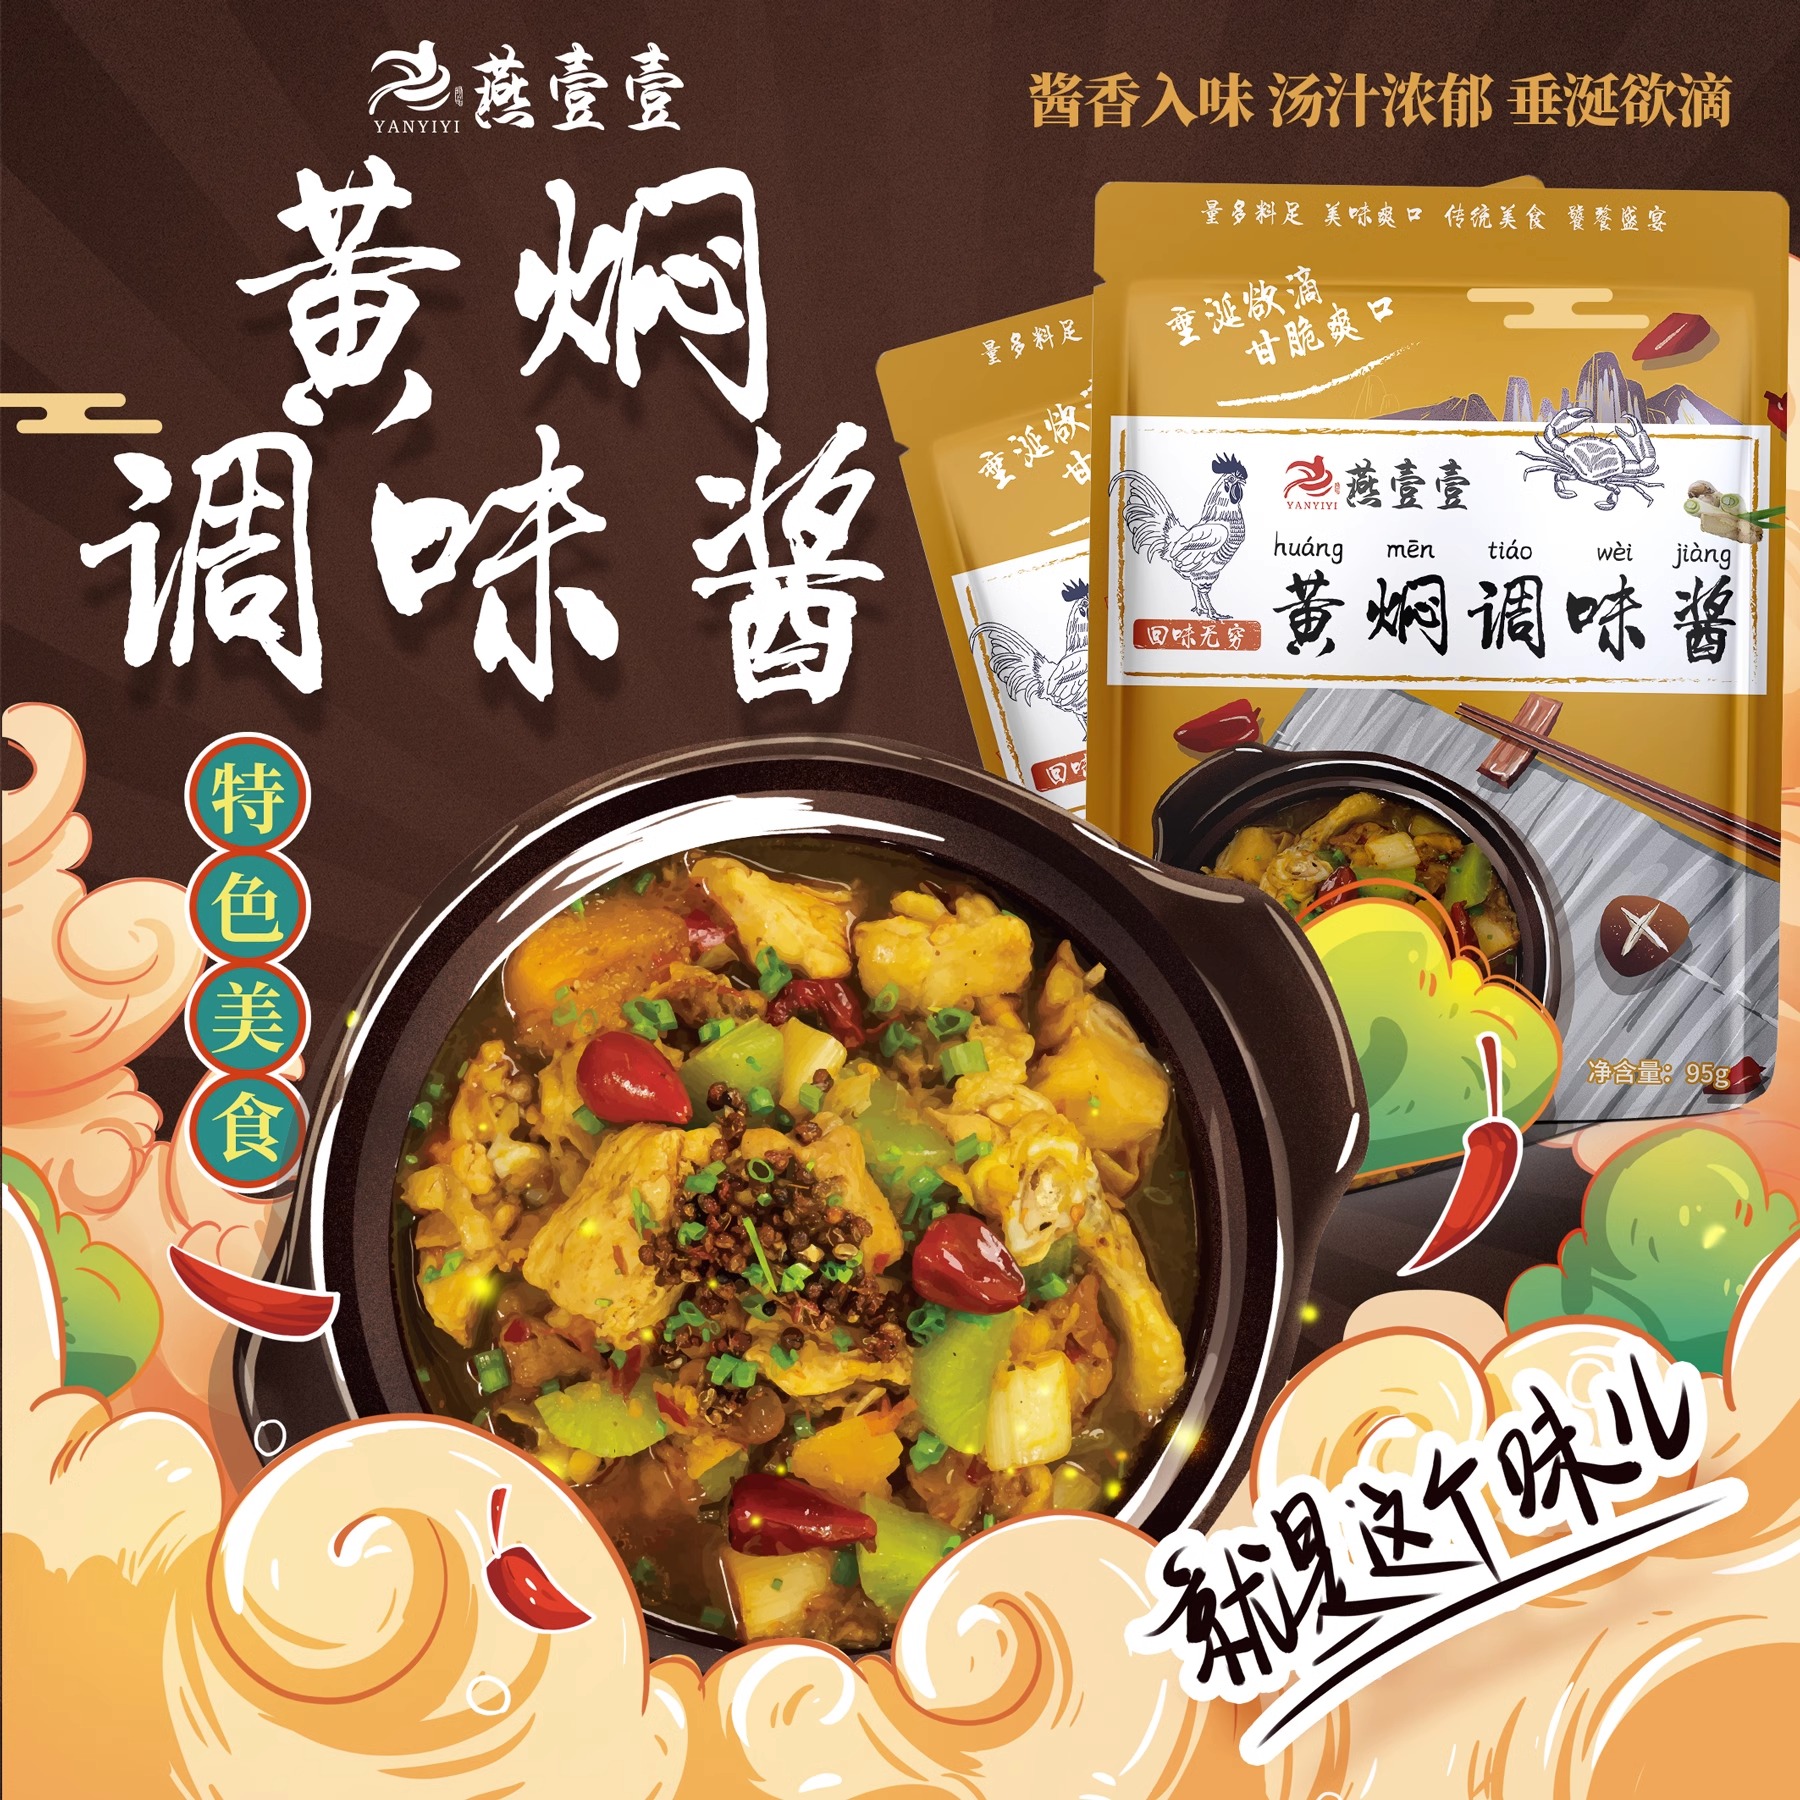 燕壹壹黄焖调味酱酱汁家用黄焖鸡米饭燕一一排骨酱料配方调料理包